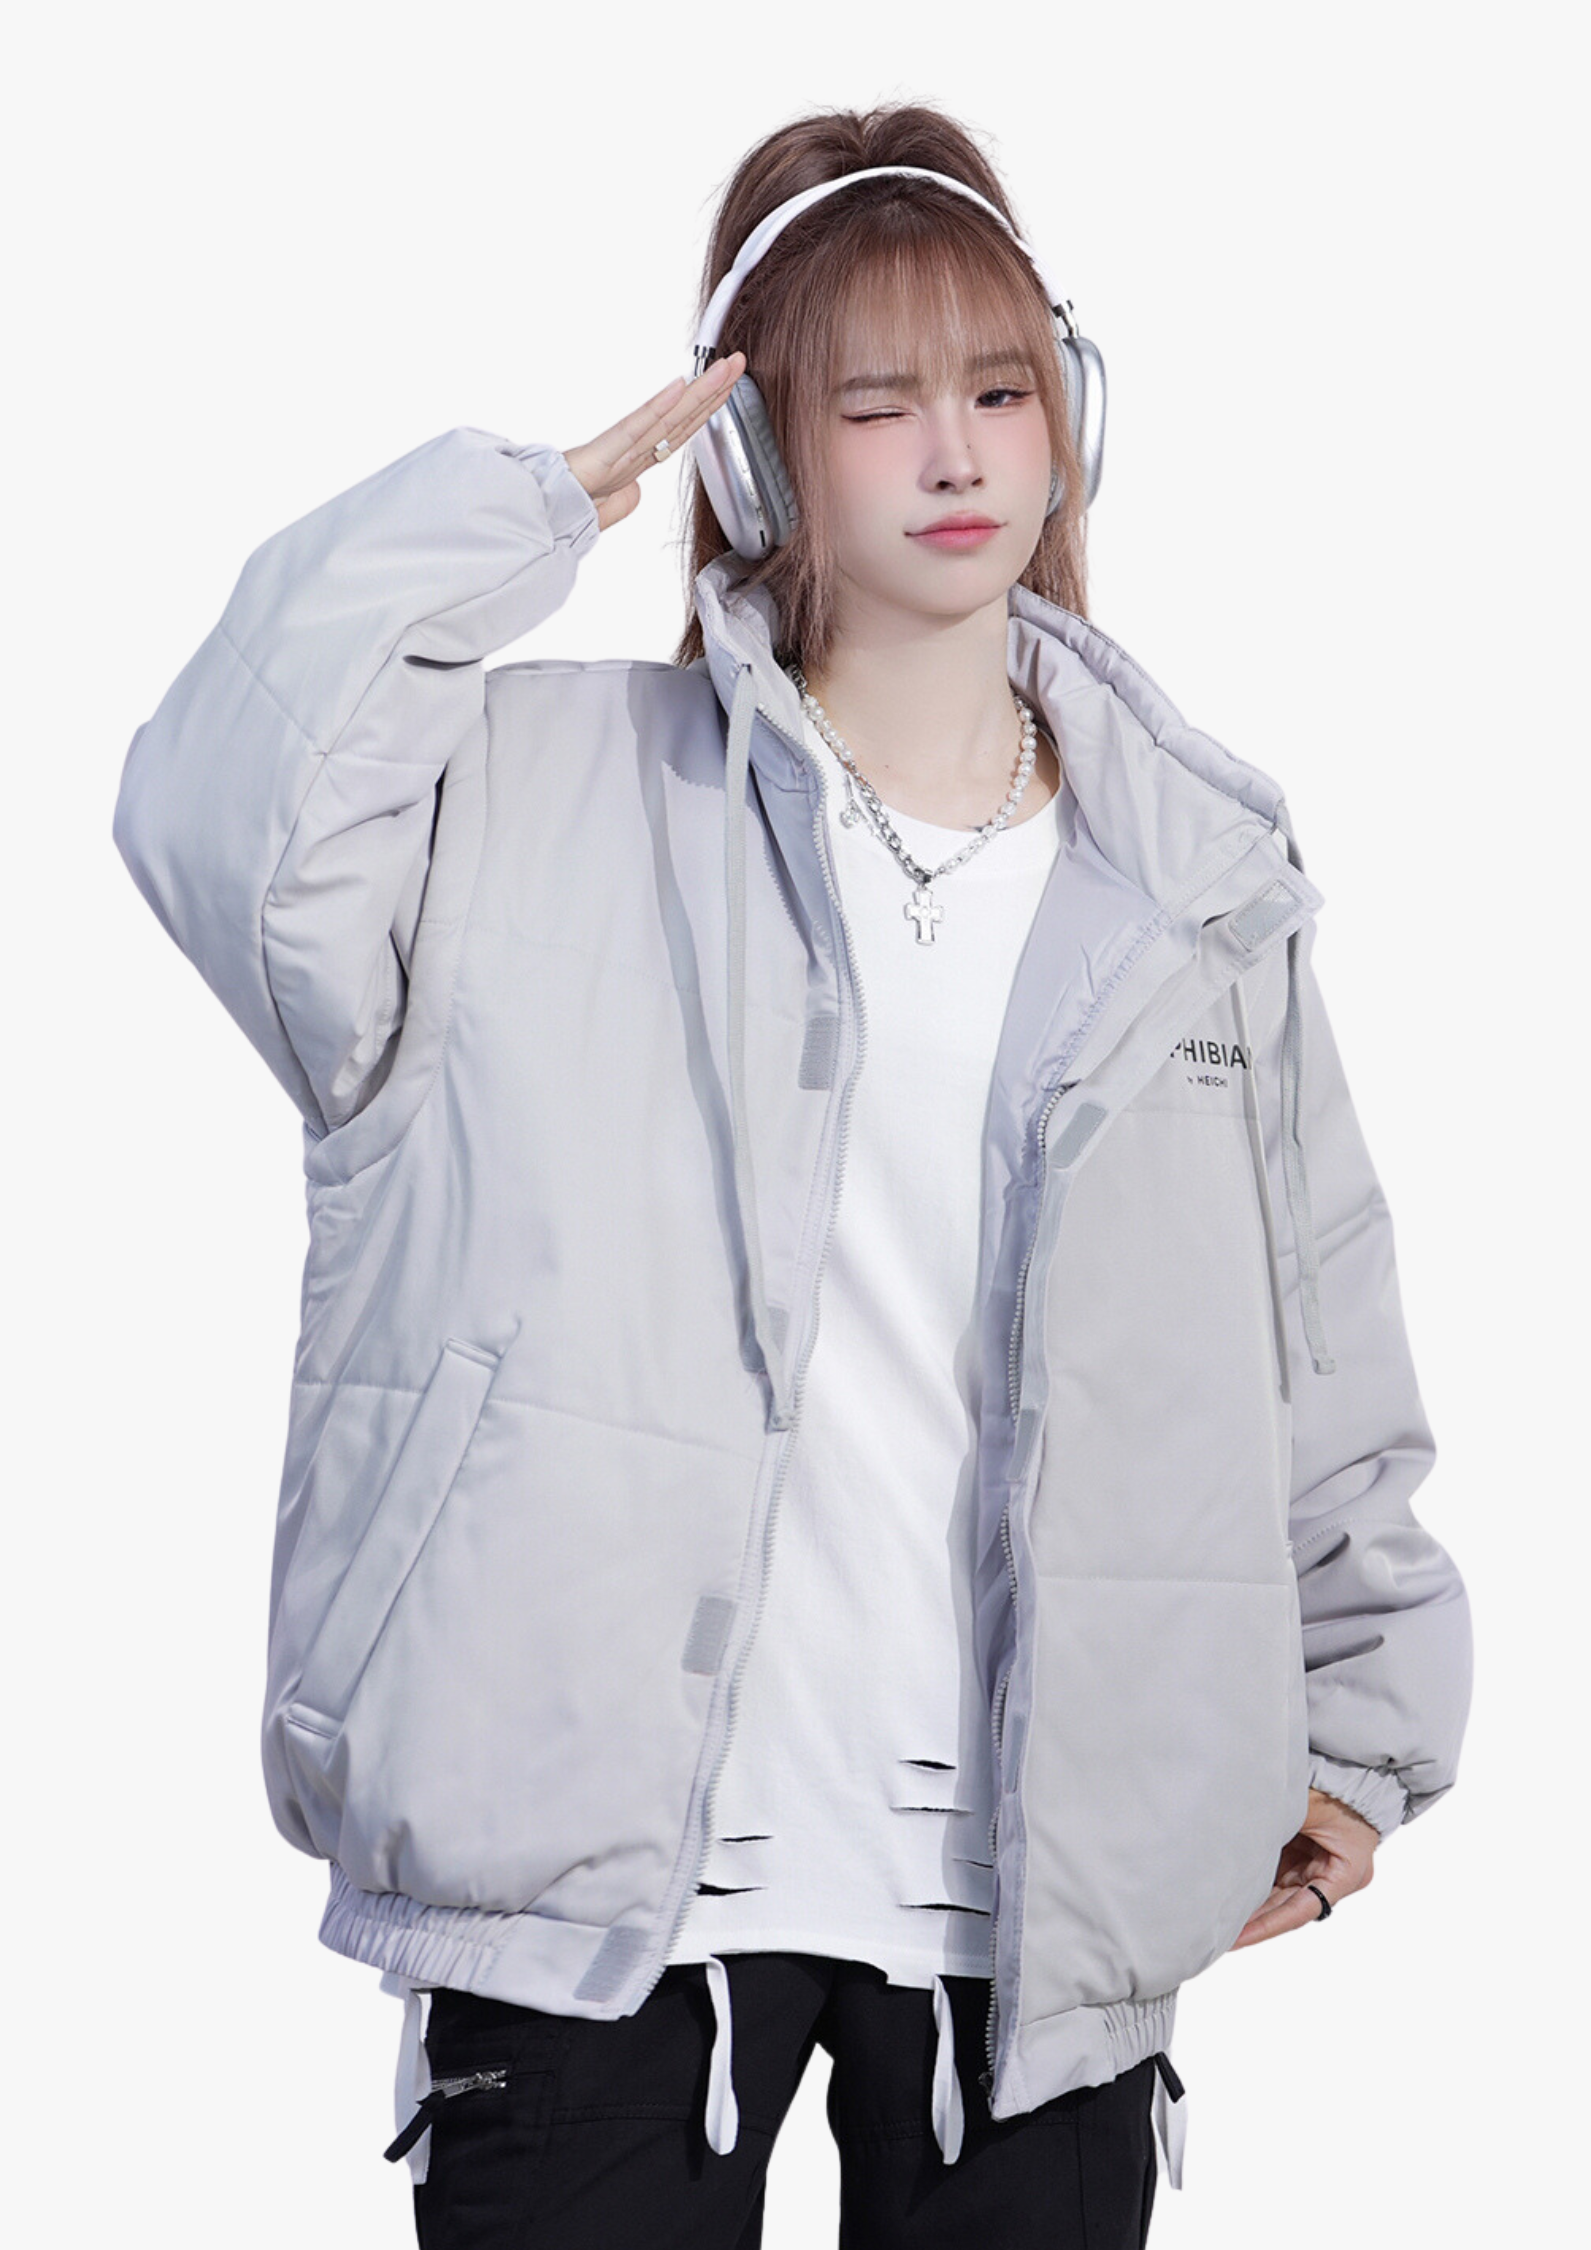 Shoulder or Shoulderless Puffer Jacket